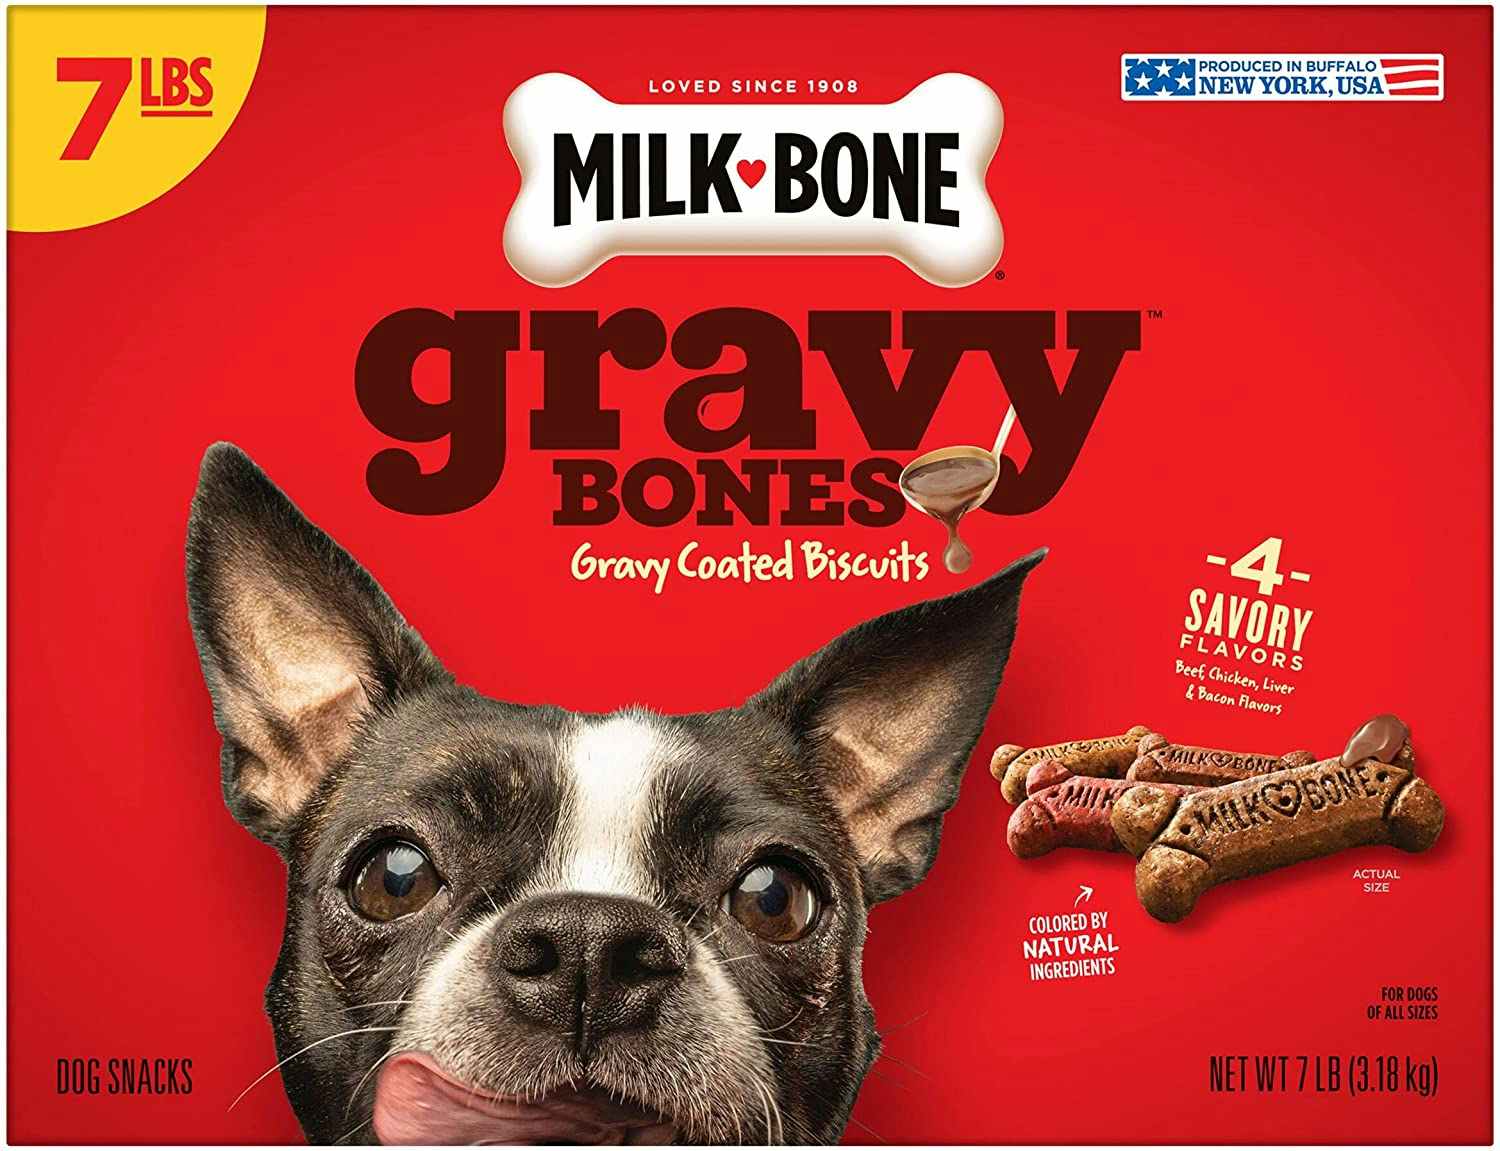 A box of Milk-Bone gravy dog biscuits.